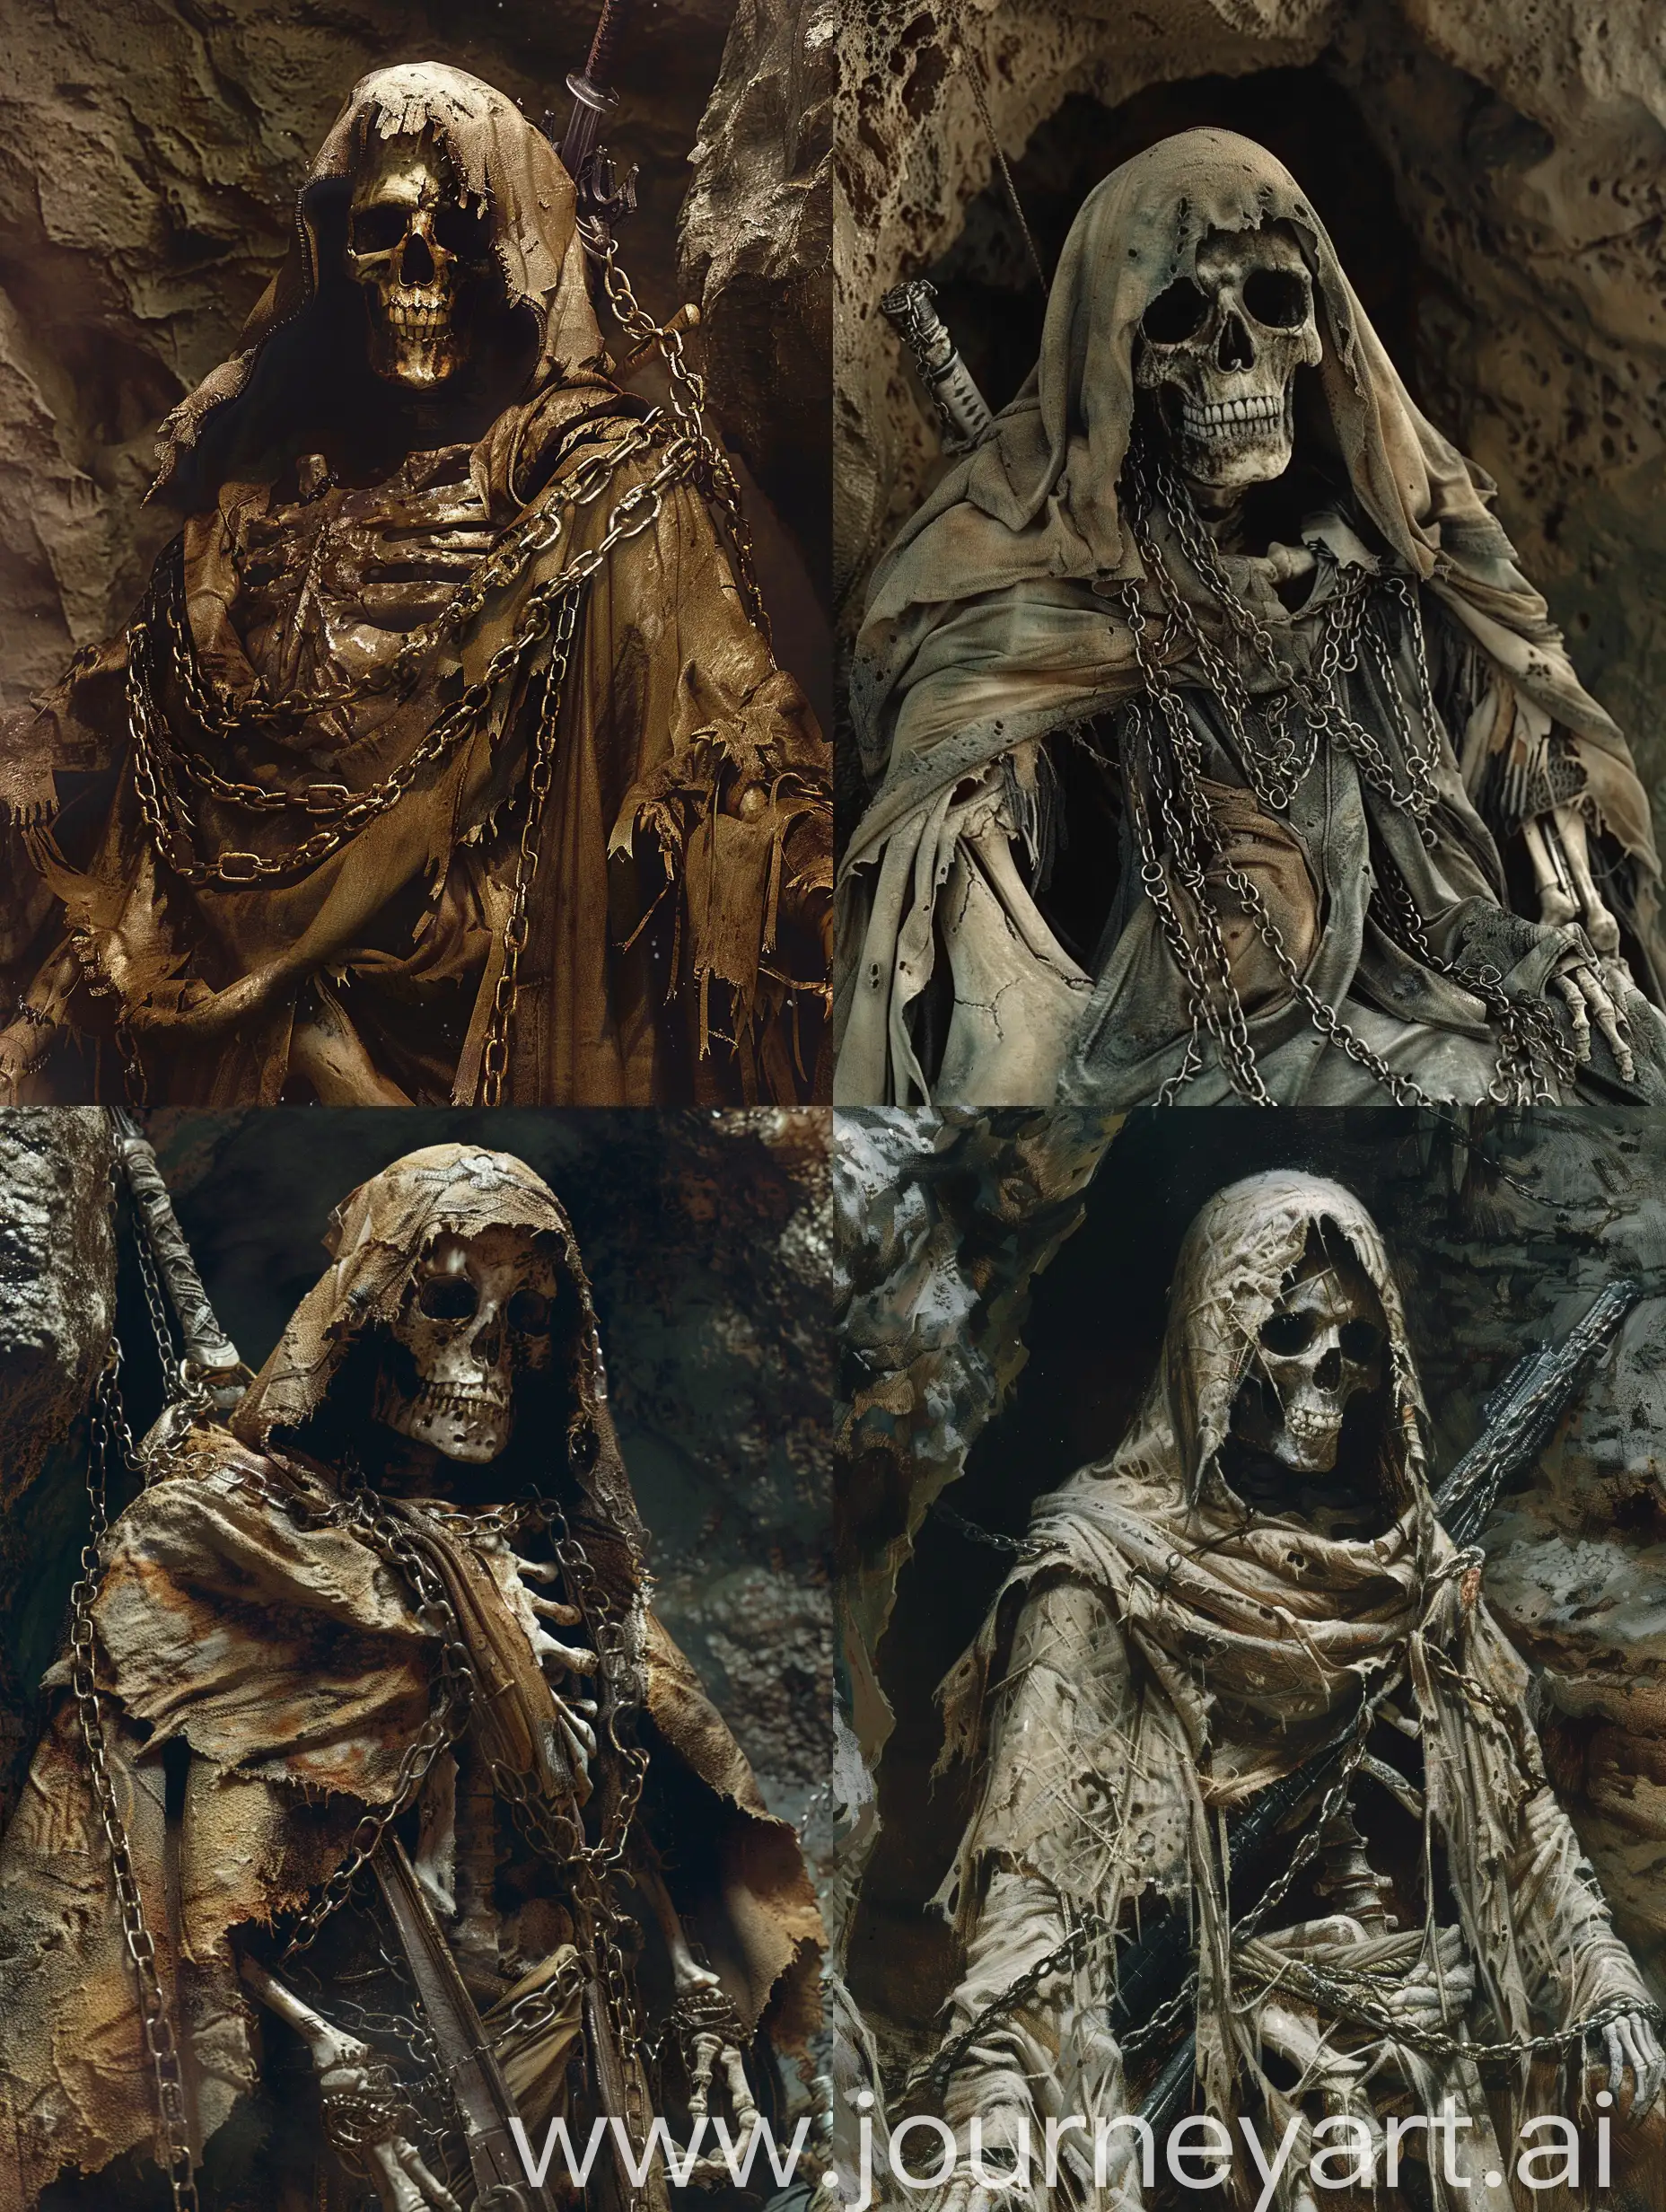 Ethereal-Skeleton-Warrior-in-Haunting-Underground-Confinement